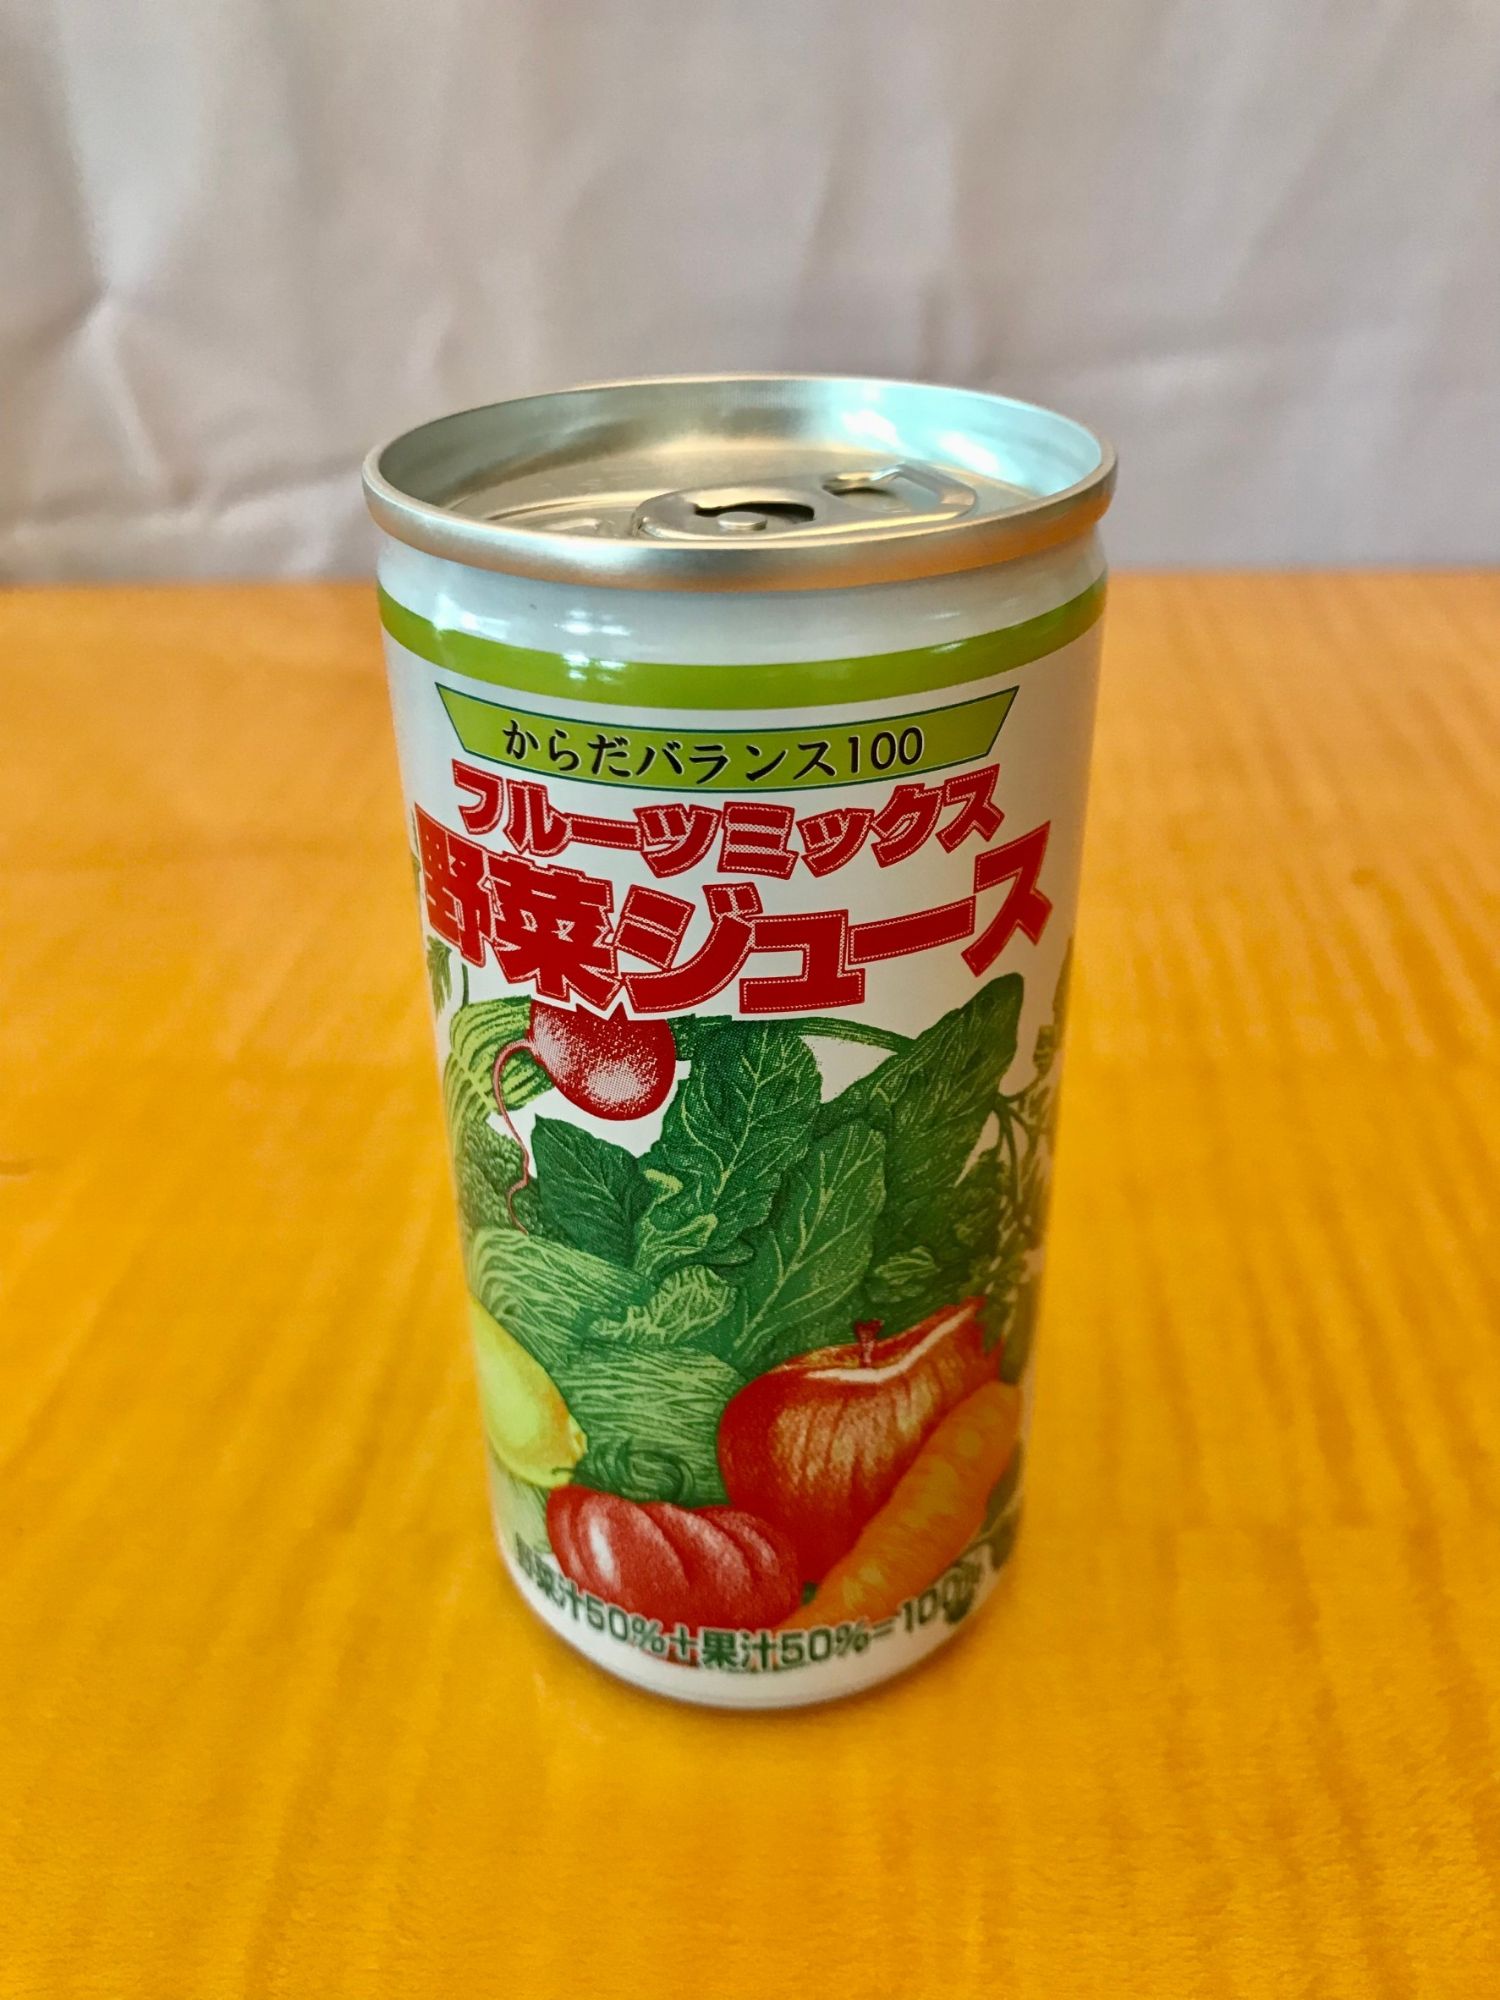 น้ำผักผลไม้รวม 100% น้ำผักผลไม้รวมญี่ปุ่น